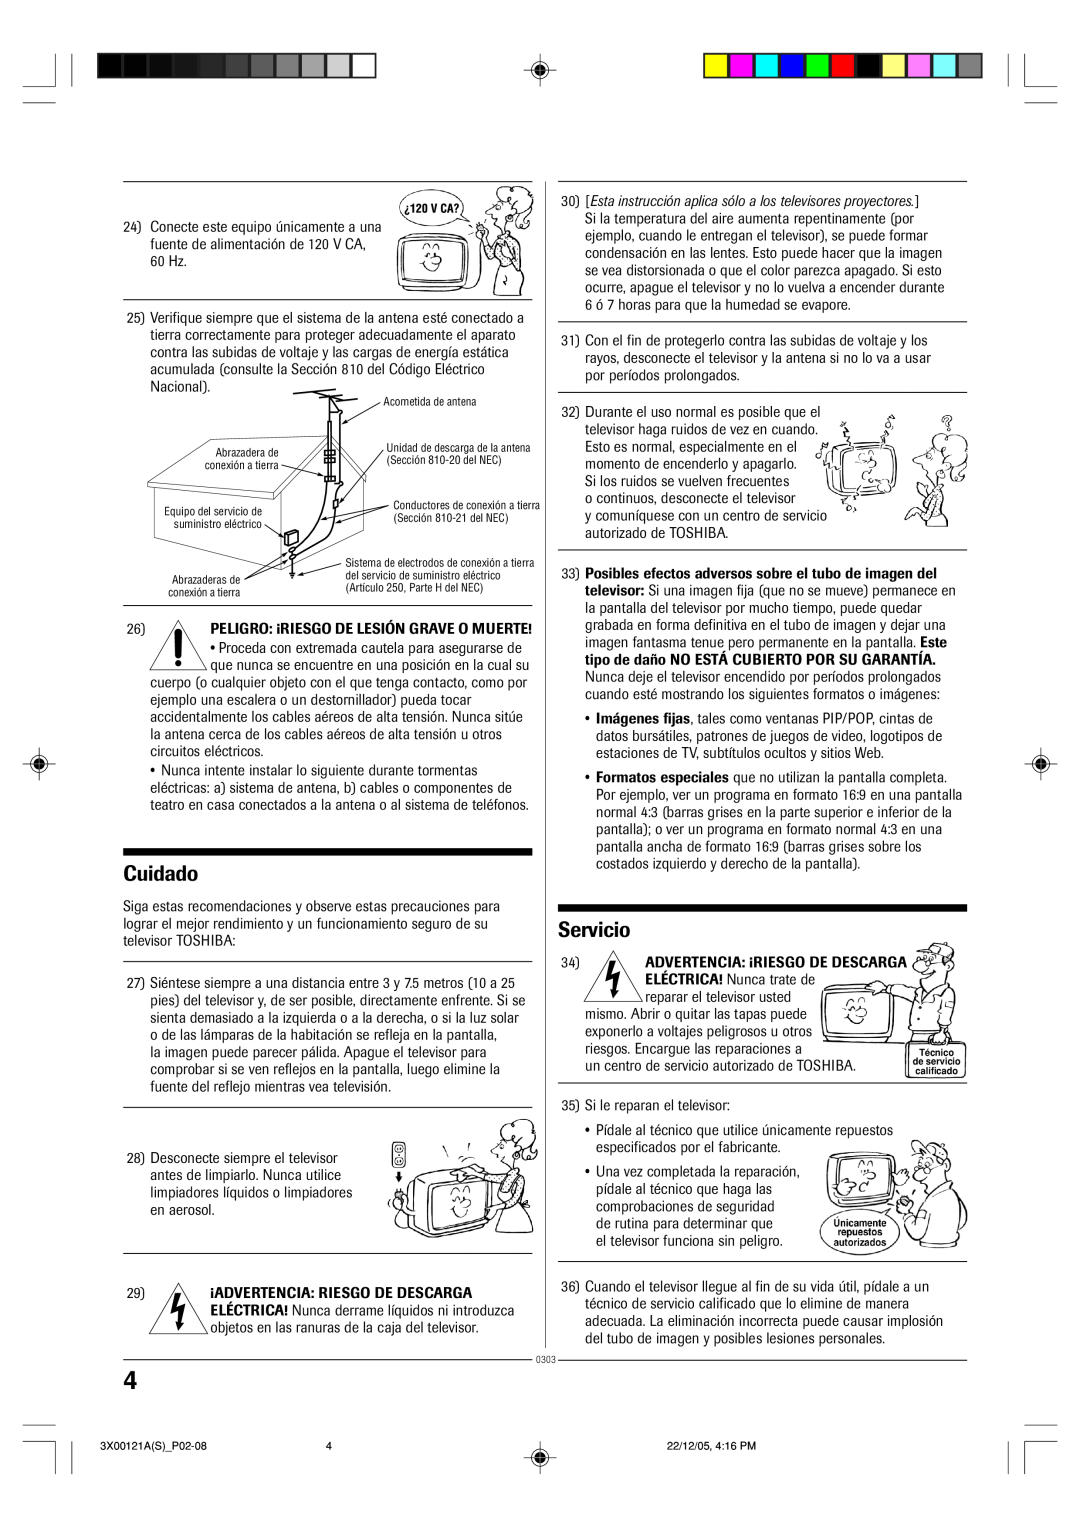 Toshiba 13A26 manual Cuidado, Servicio 